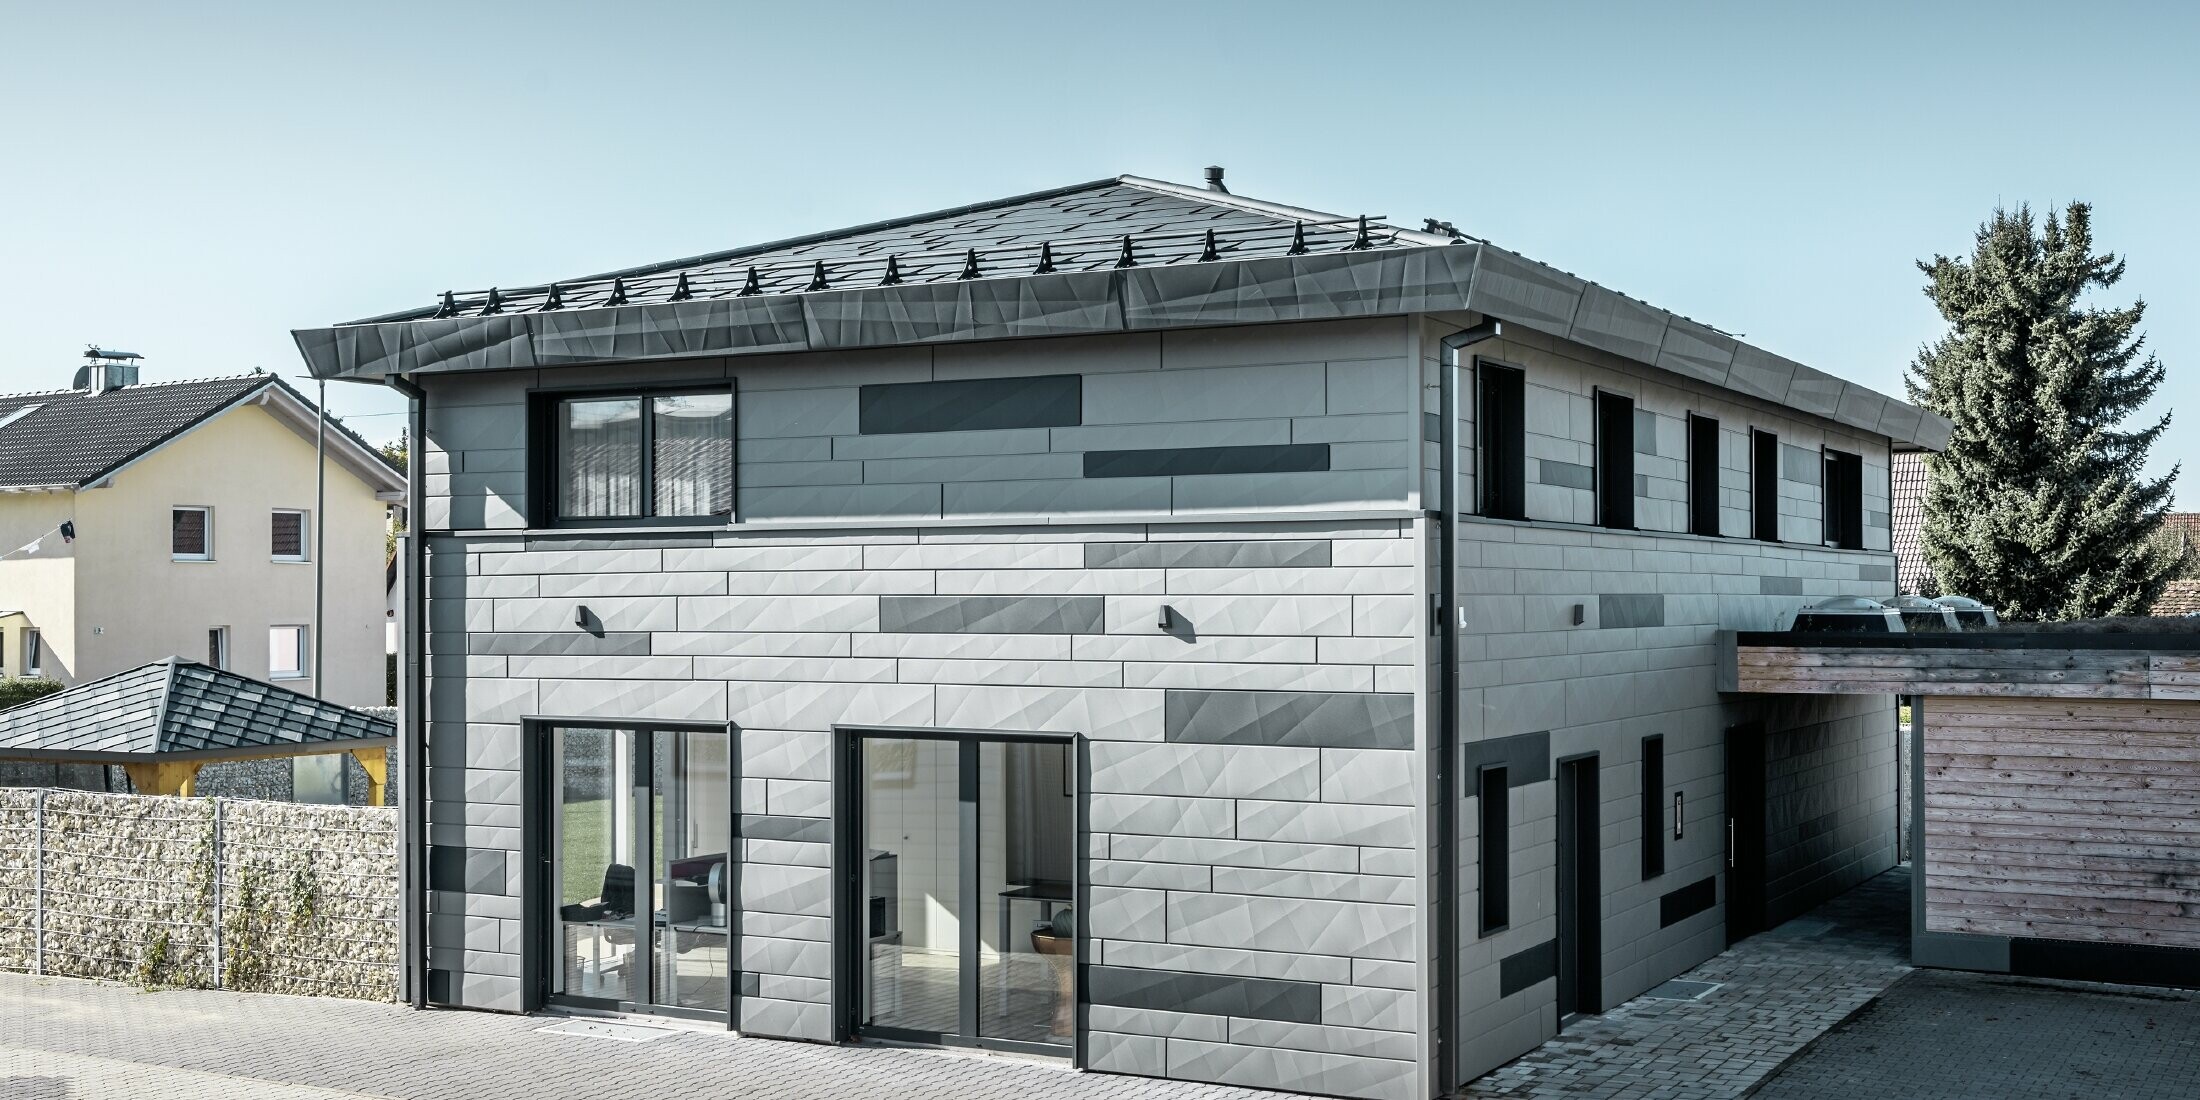 Vue sur la maison individuelle depuis la rue. La façade bicolore et les arêtes des panneaux FX.12 donnent une apparence moderne à la maison.